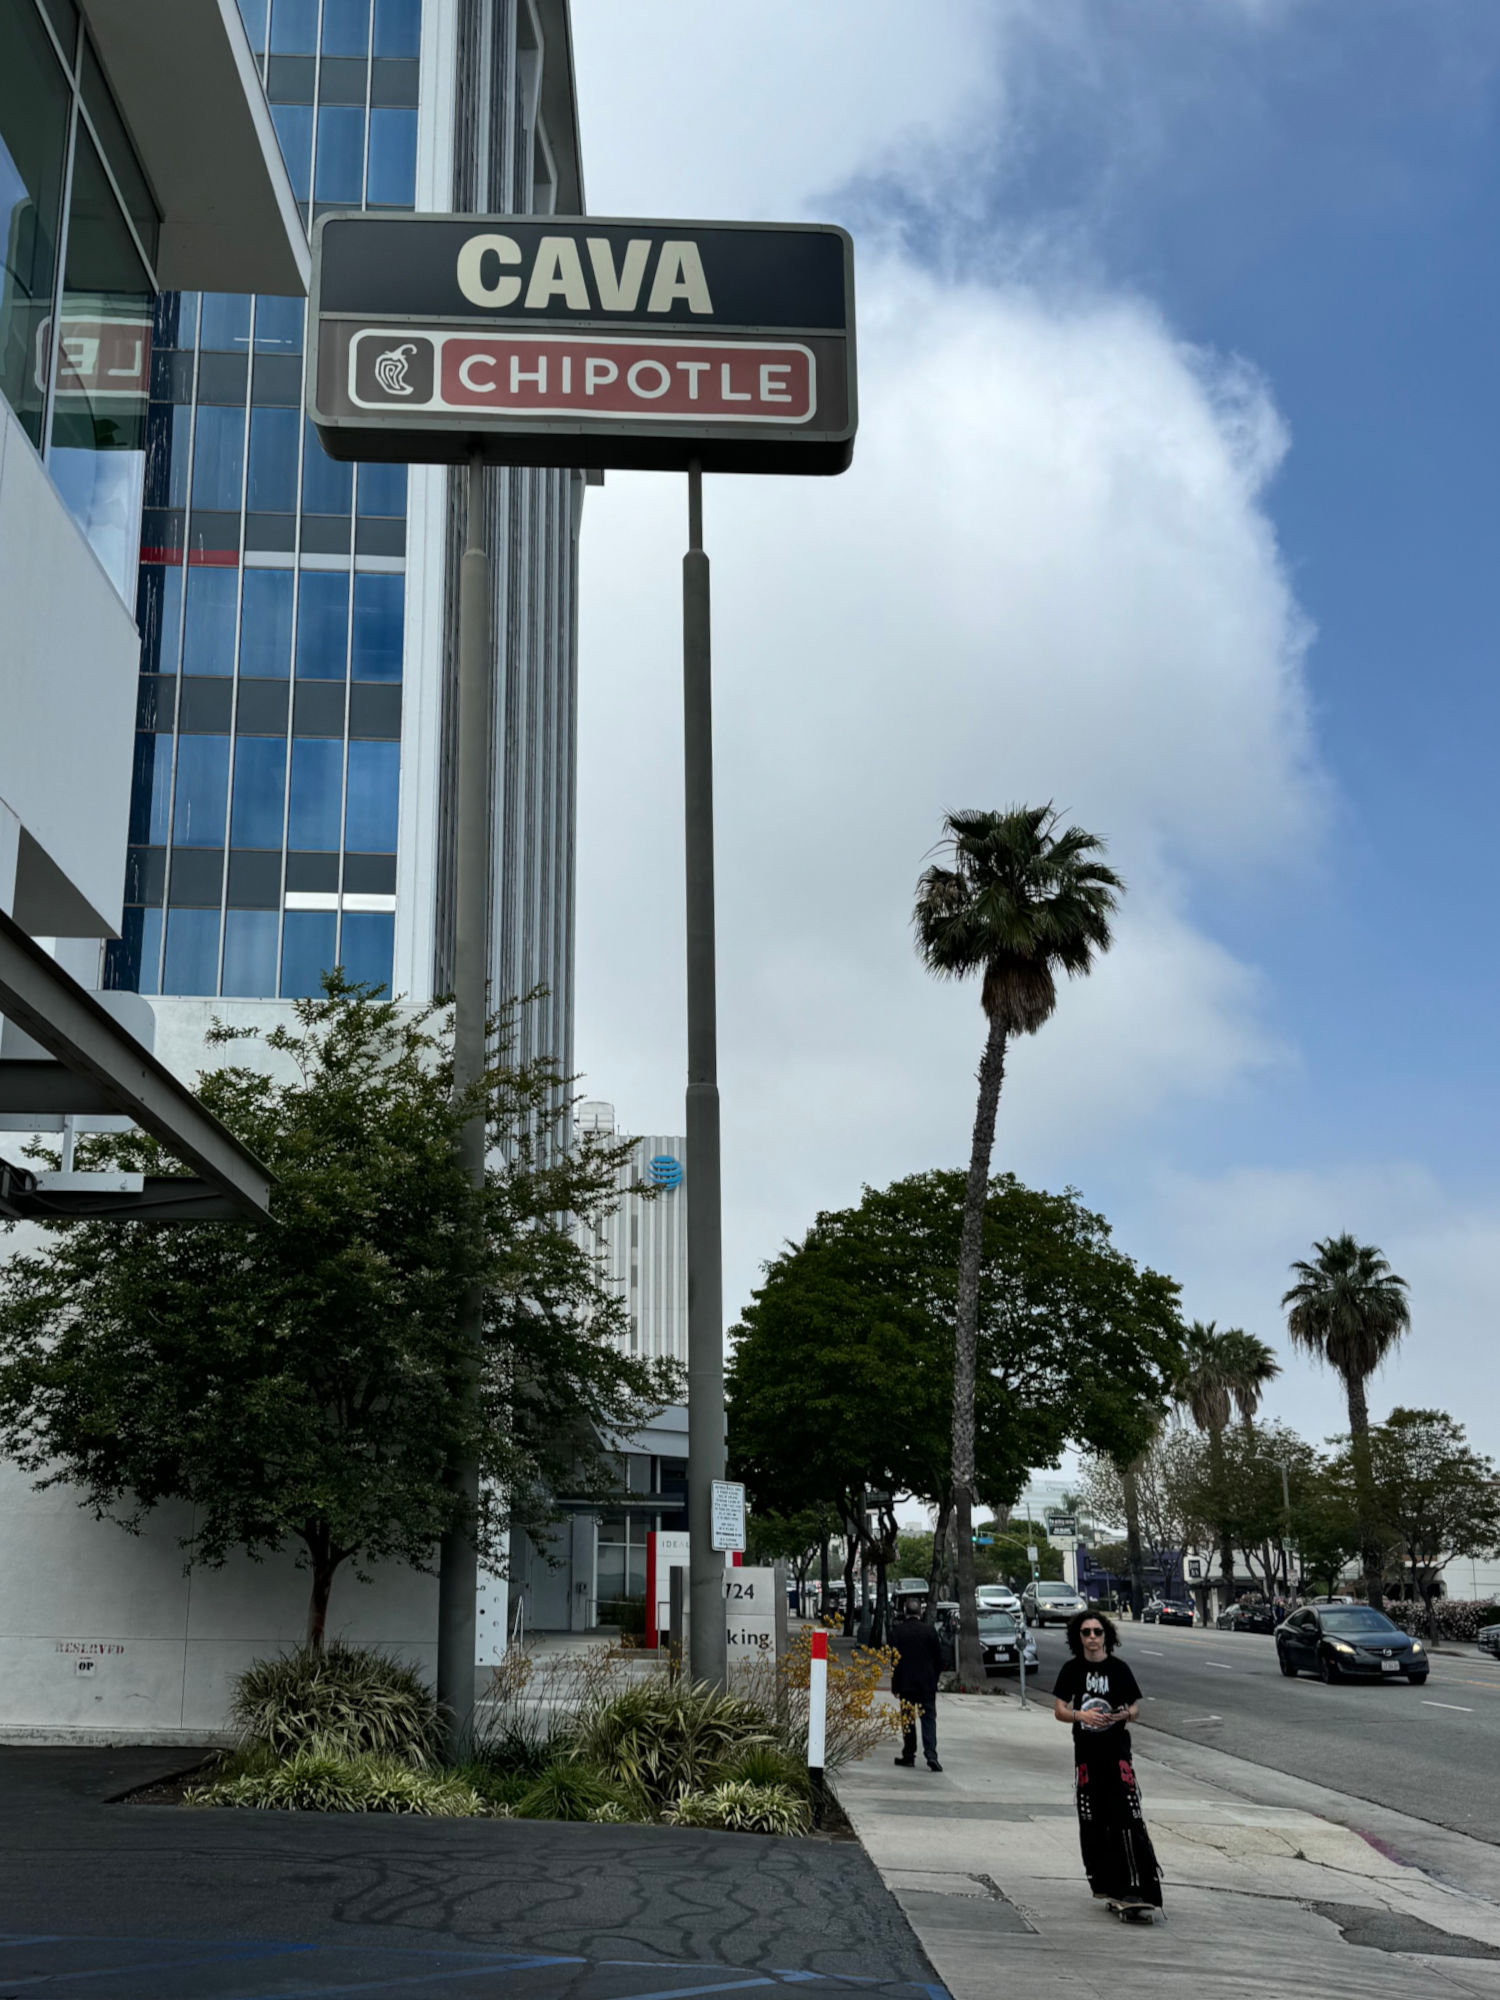 Cava & Chipotle Sign